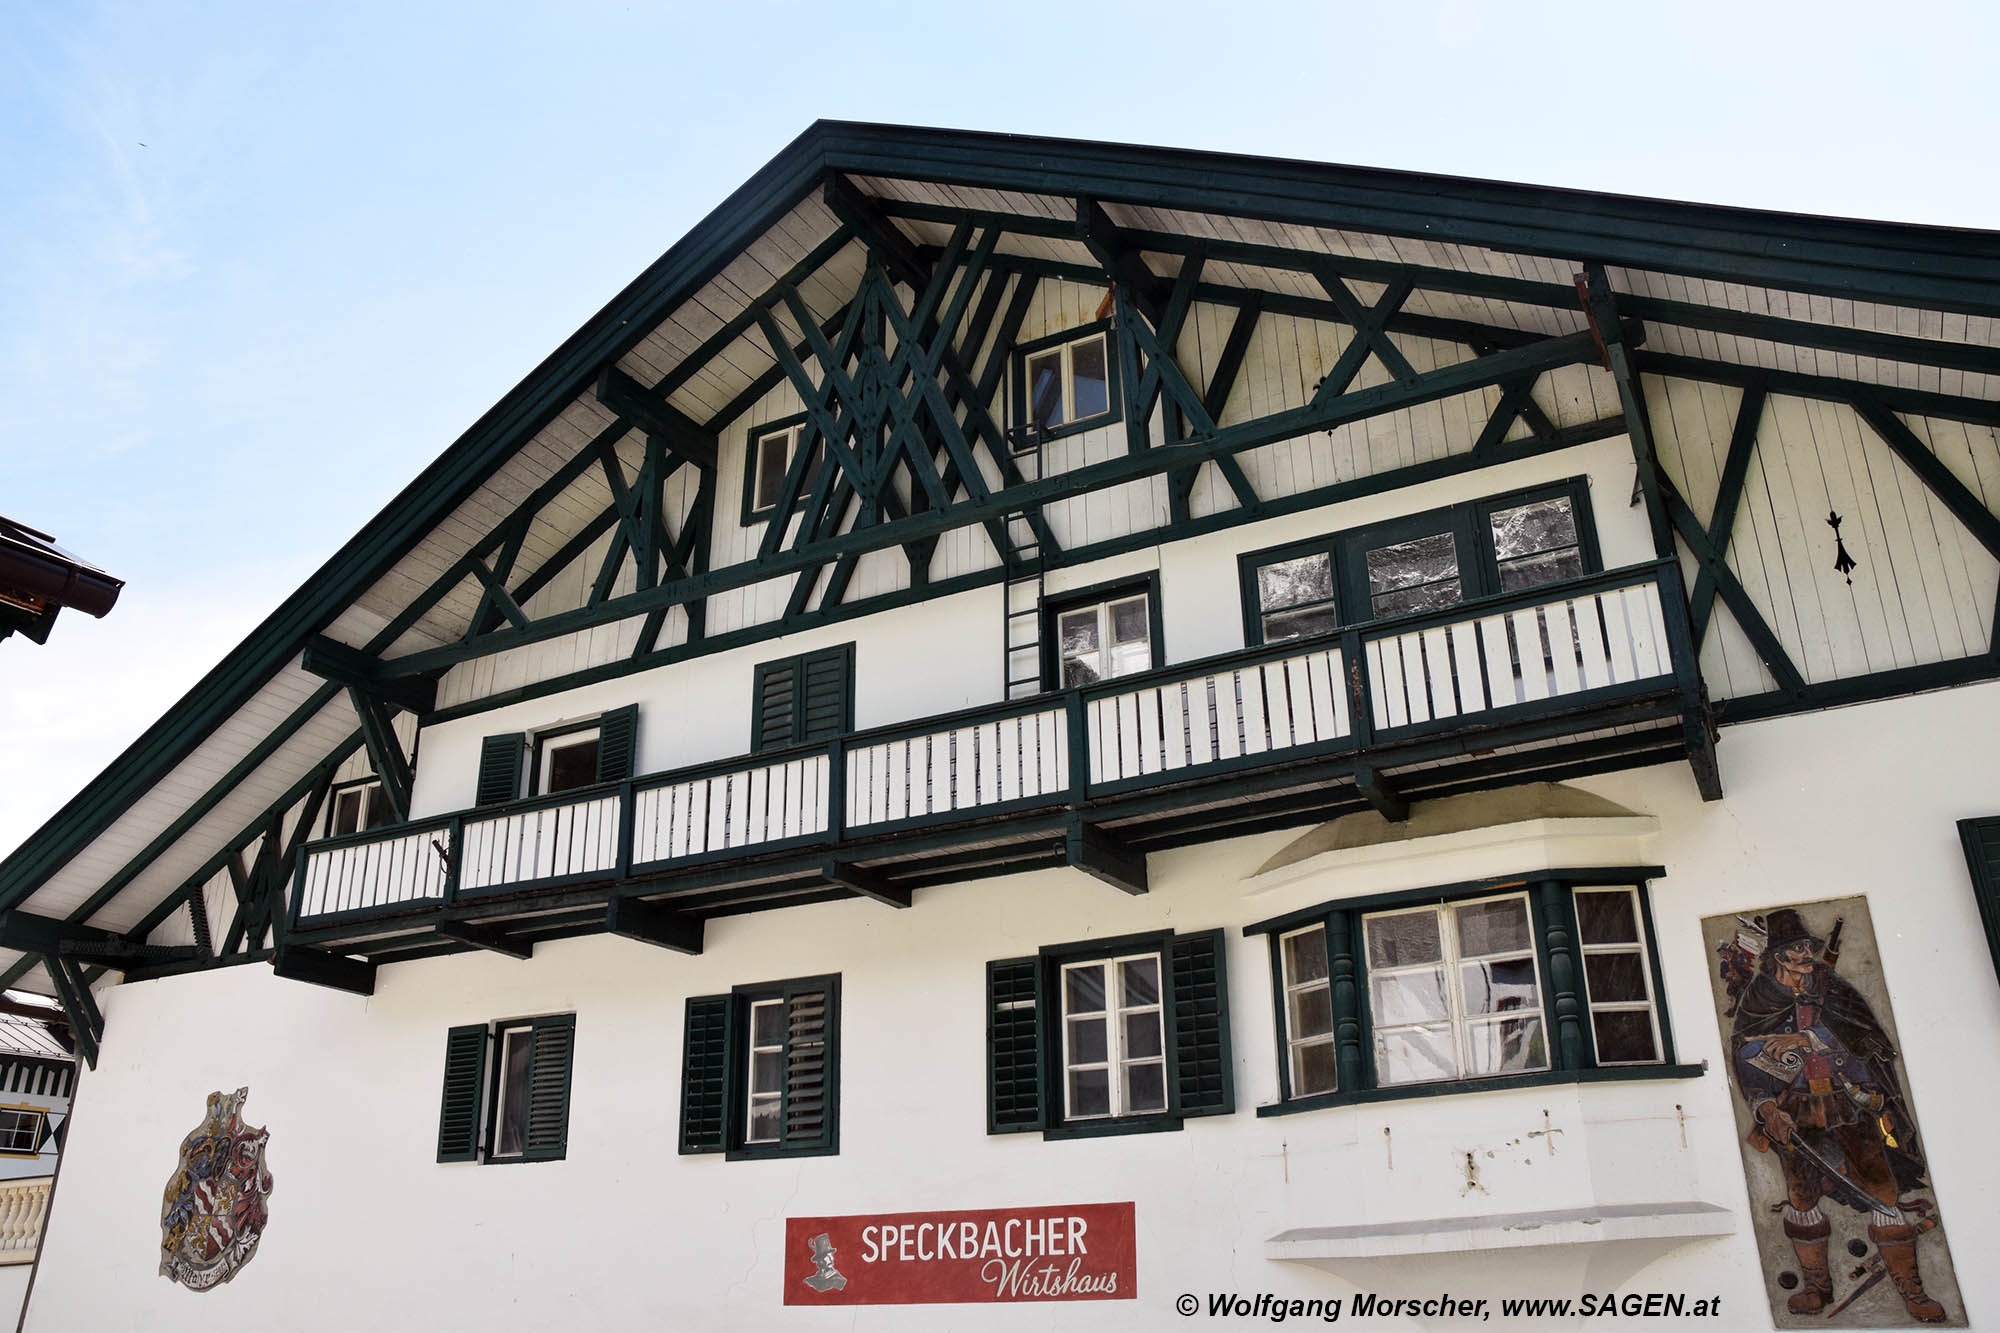 Gnadenwald Speckbacher Wirtshaus